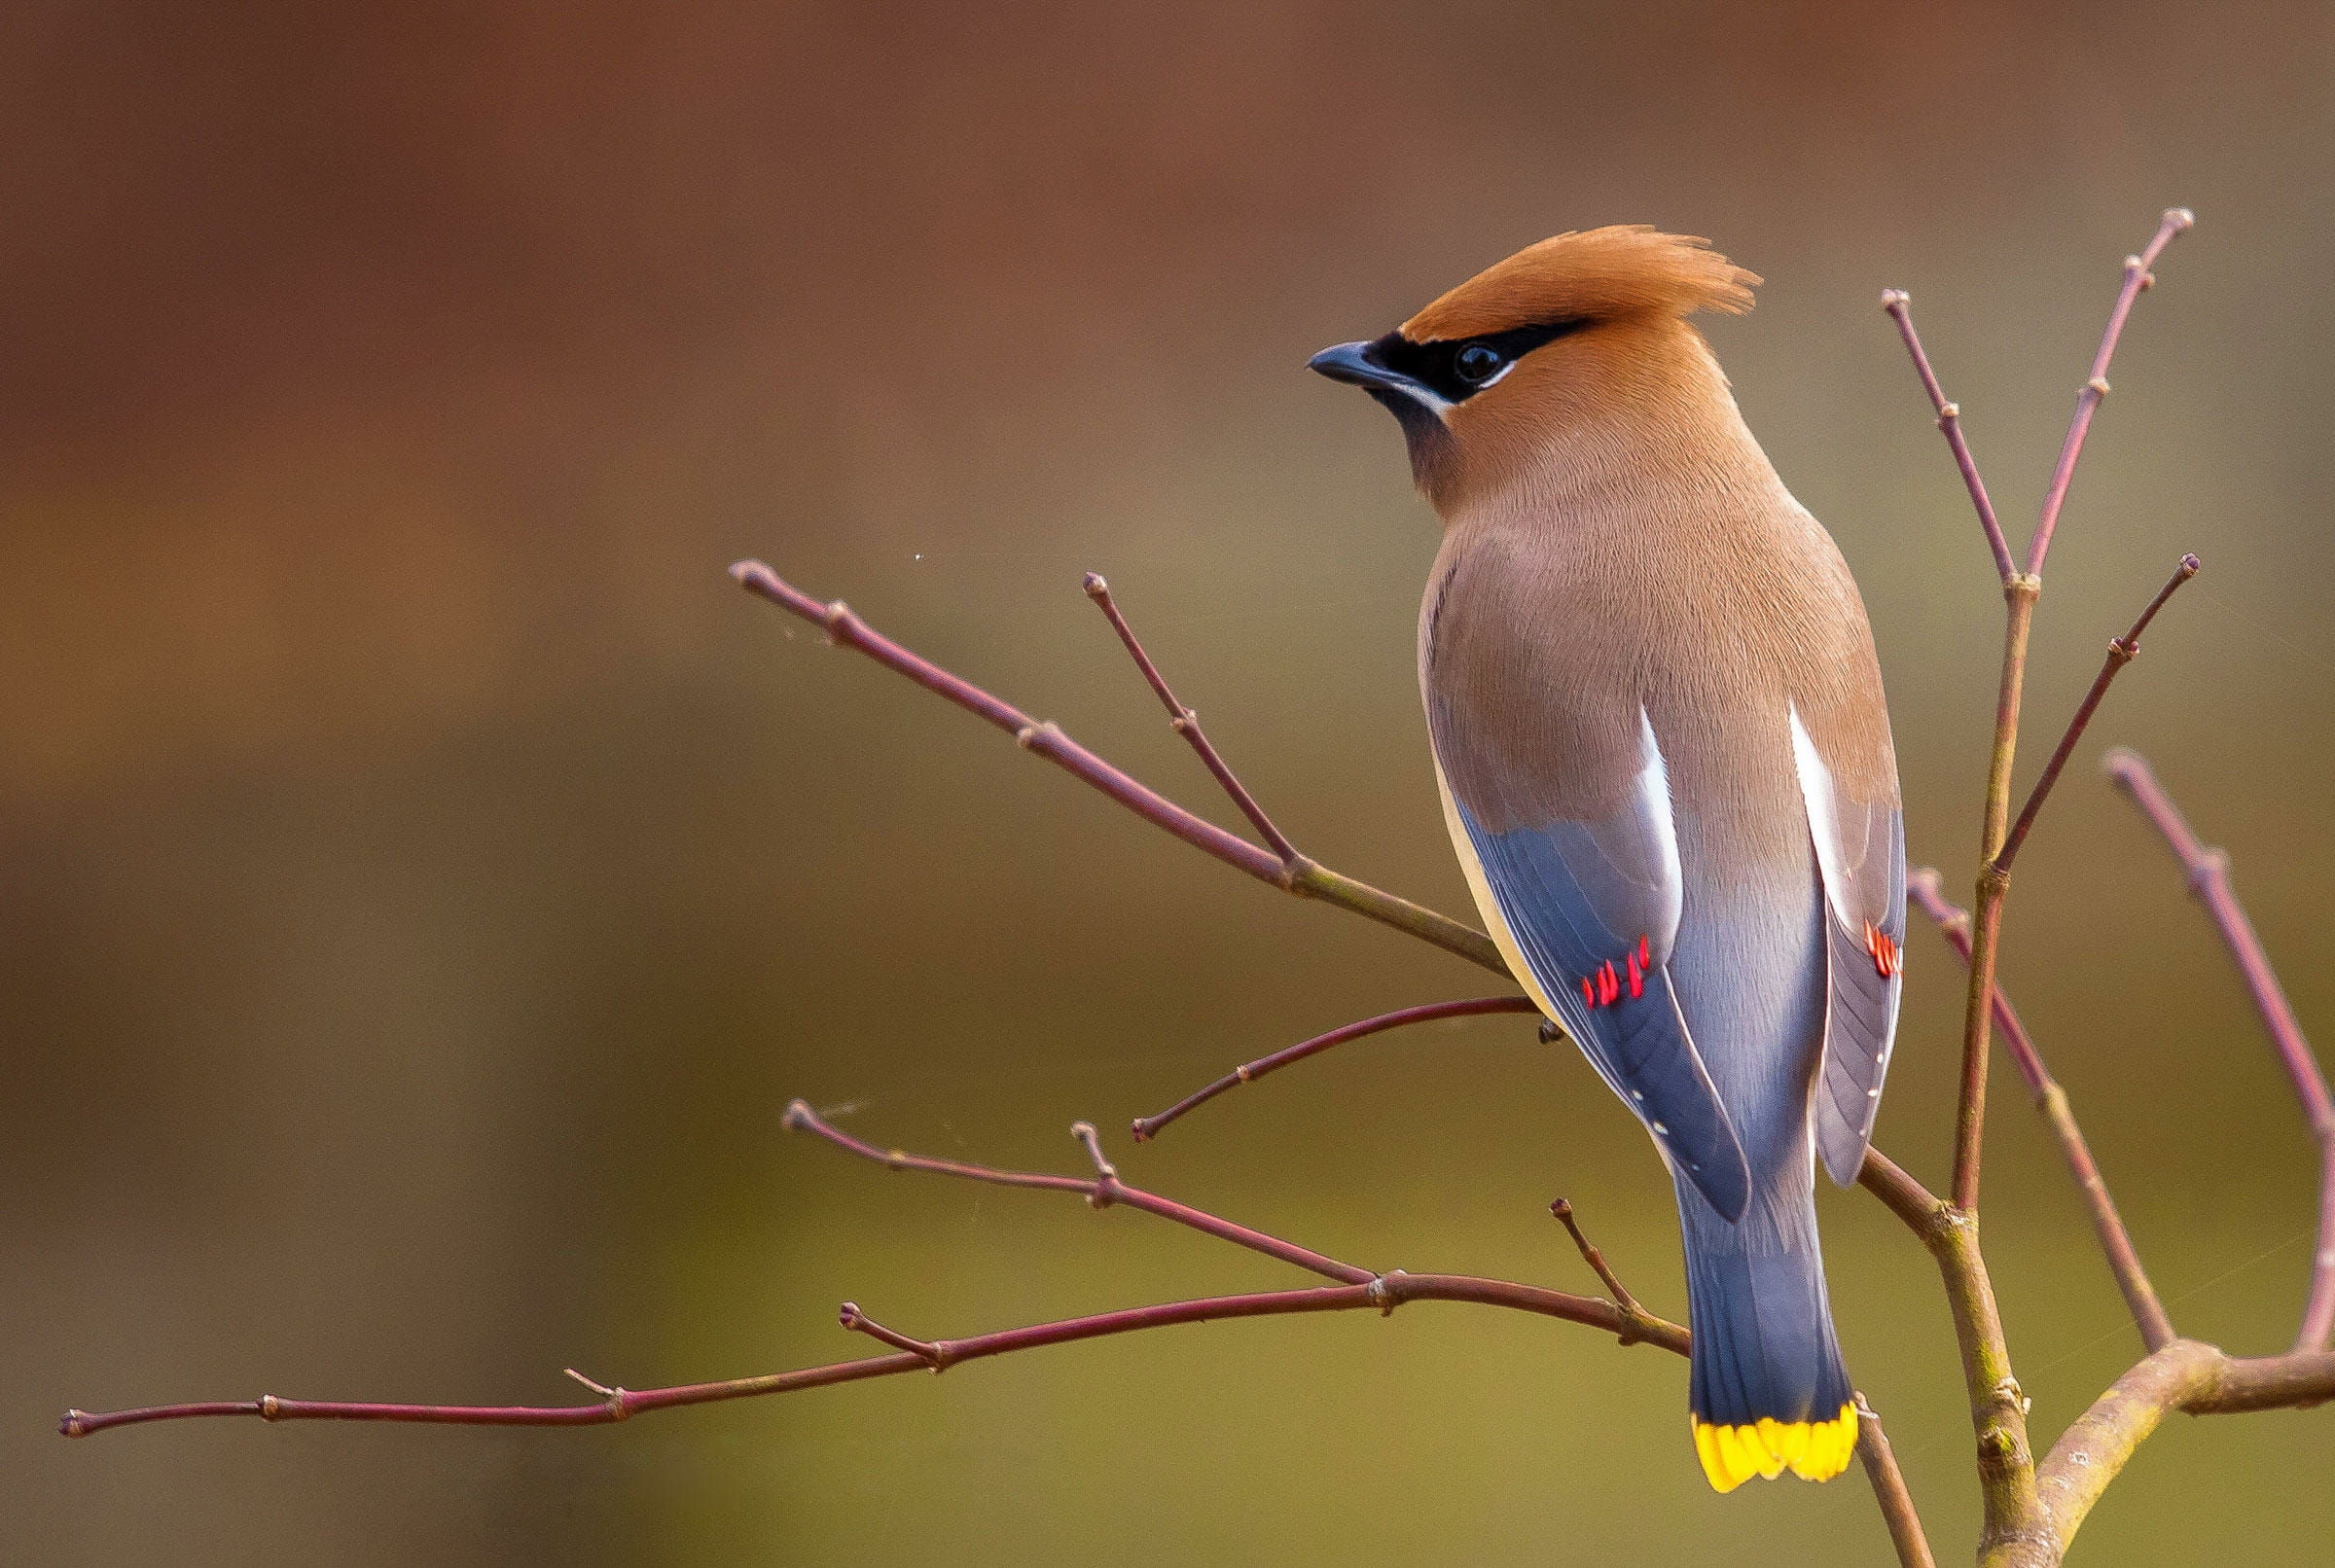 Novidade: Parque das Aves inaugura mais um atrativo ave